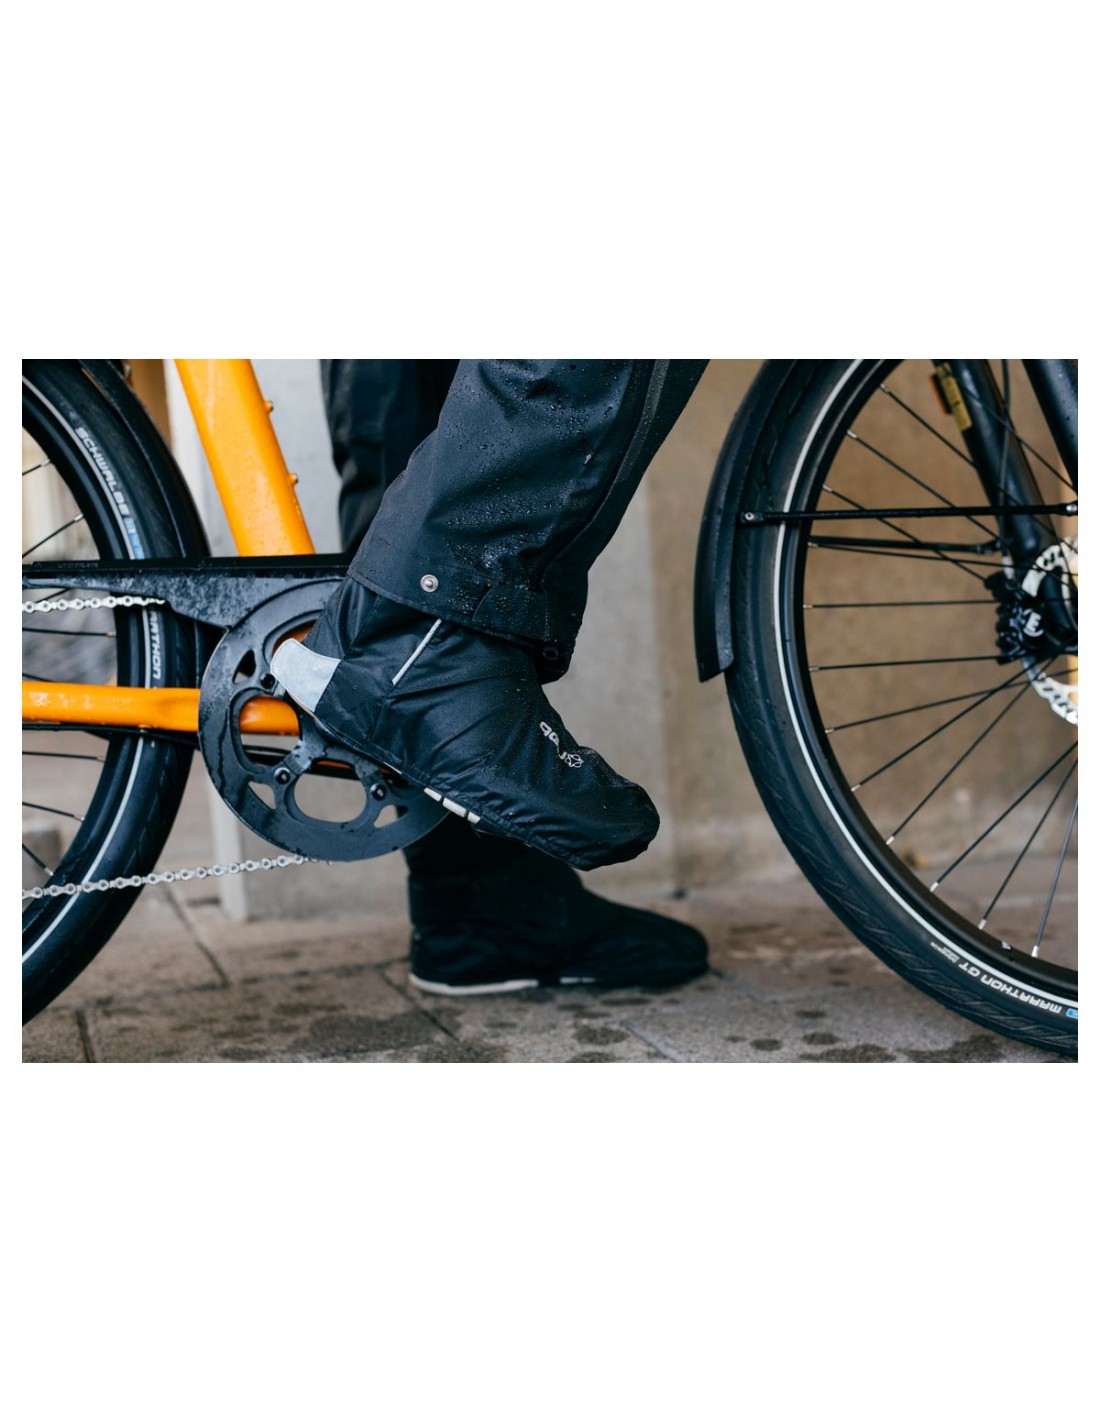 Couvre chaussures vélo, Protégez vos pieds du froid et de la pluie